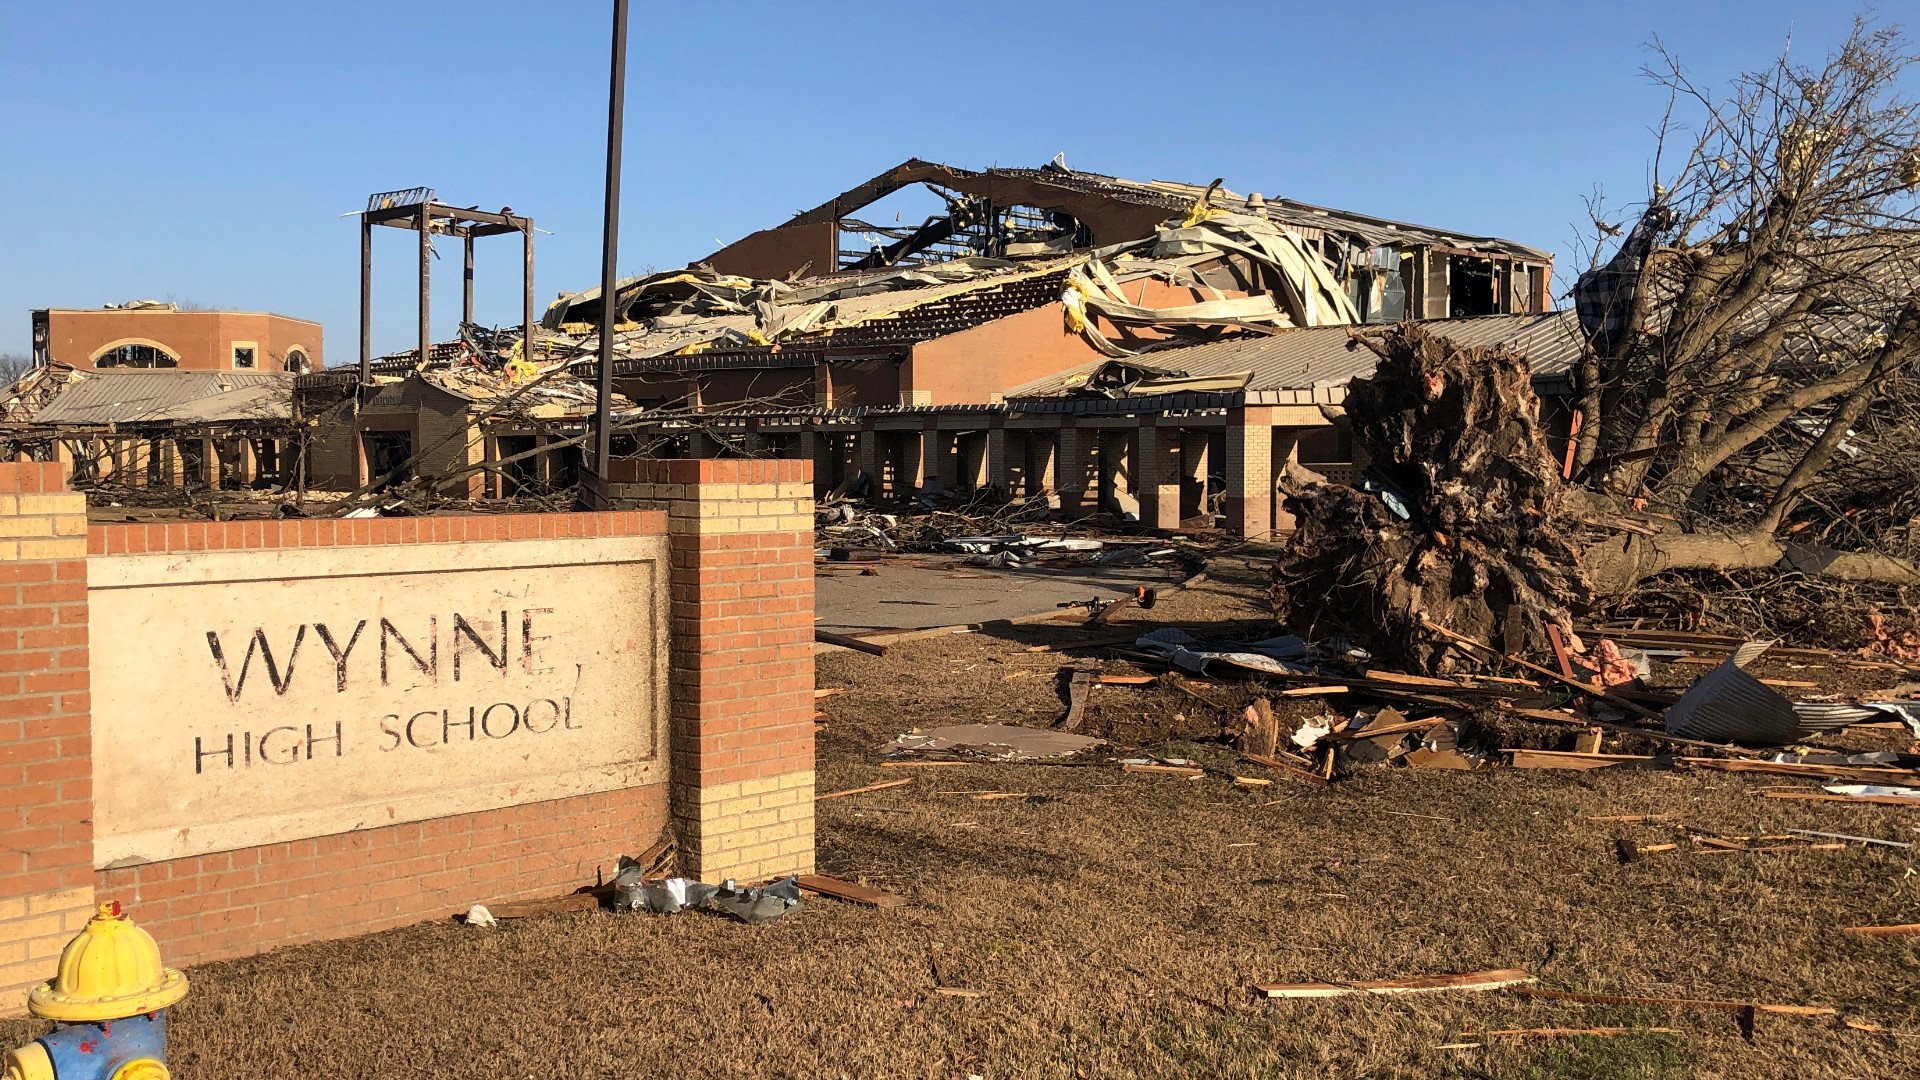 Wynne High School was severely damaged in Friday's EF-3 tornado.